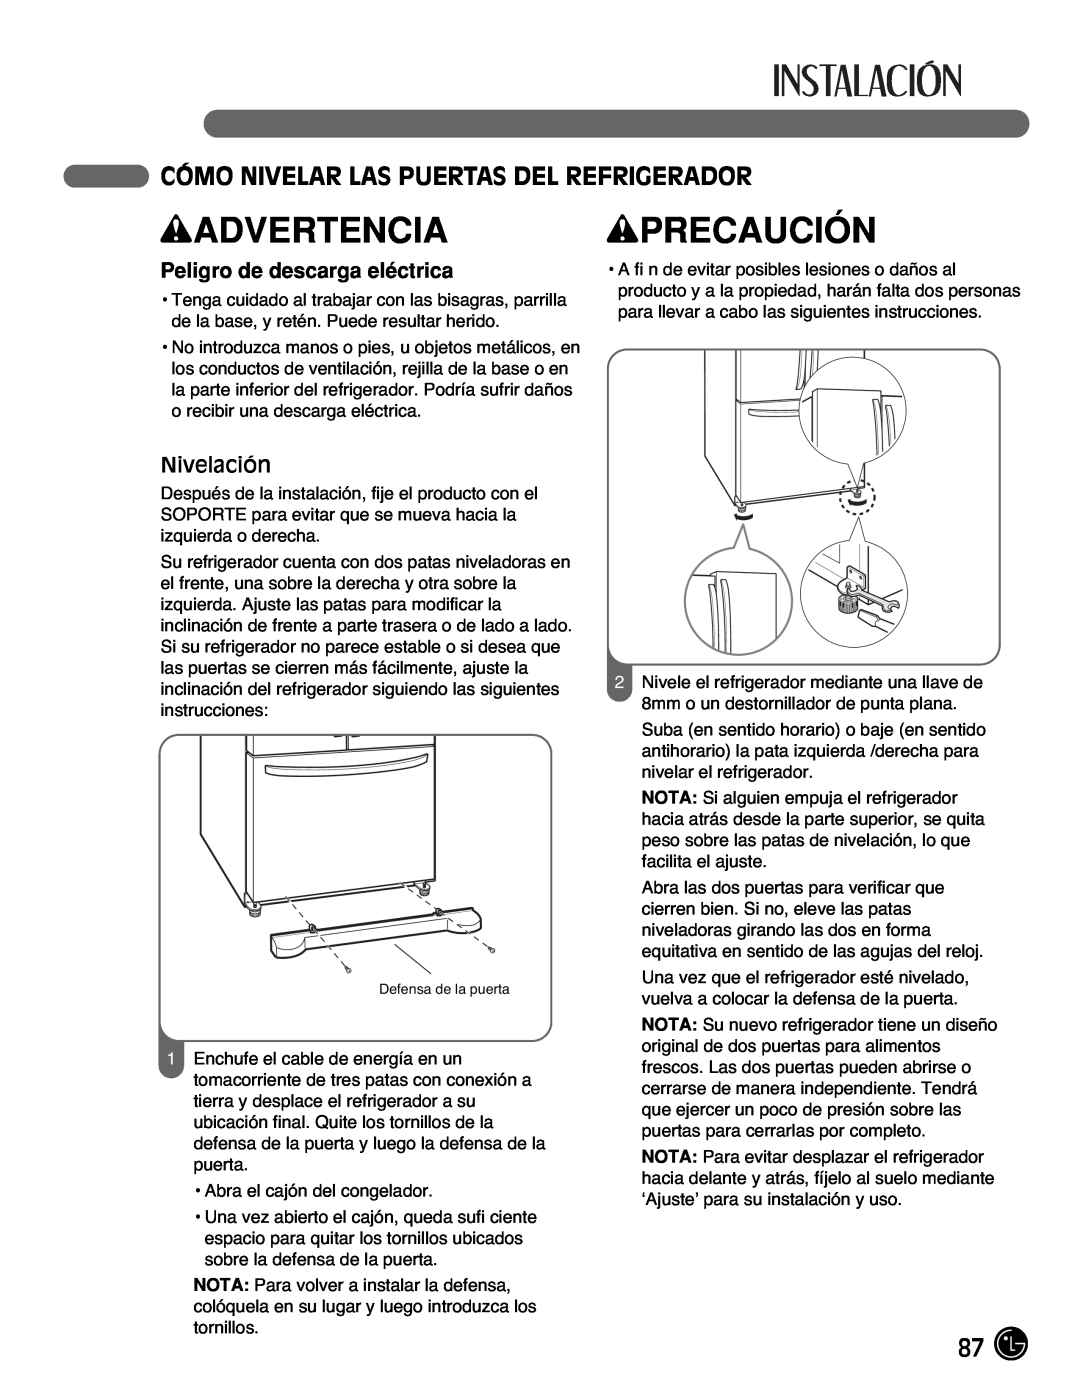 LG Electronics LFC25770, LFC21770 manual Cómo Nivelar Las Puertas Del Refrigerador, Nivelación, wADVERTENCIA, wPRECAUCIÓN 